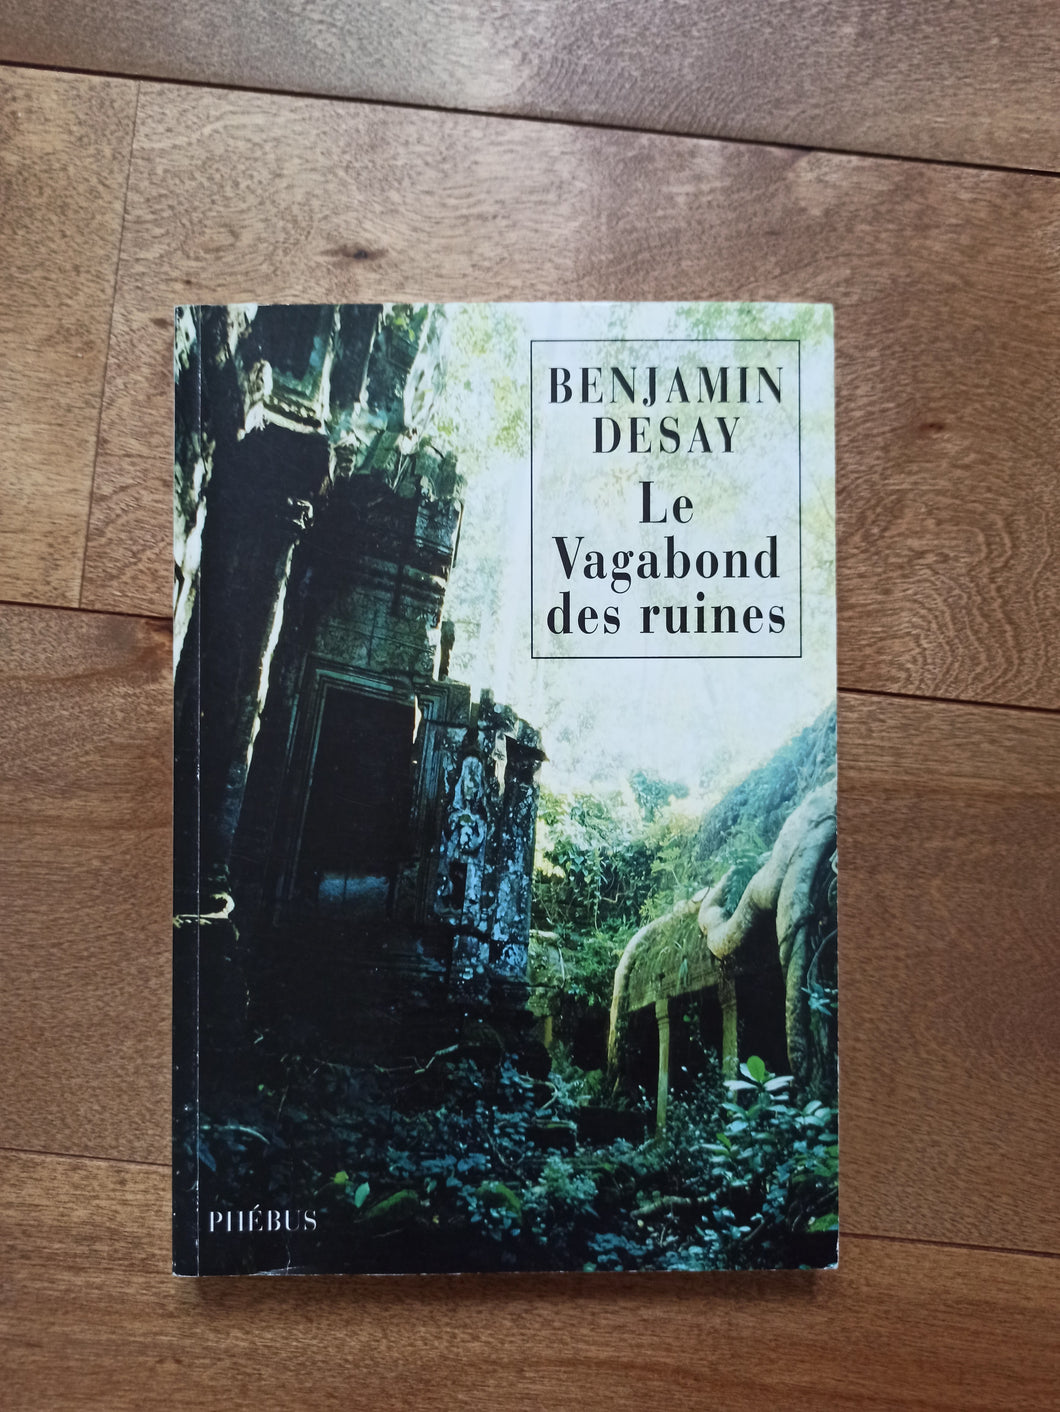 Le vagabond des ruines : Benjamin Desay